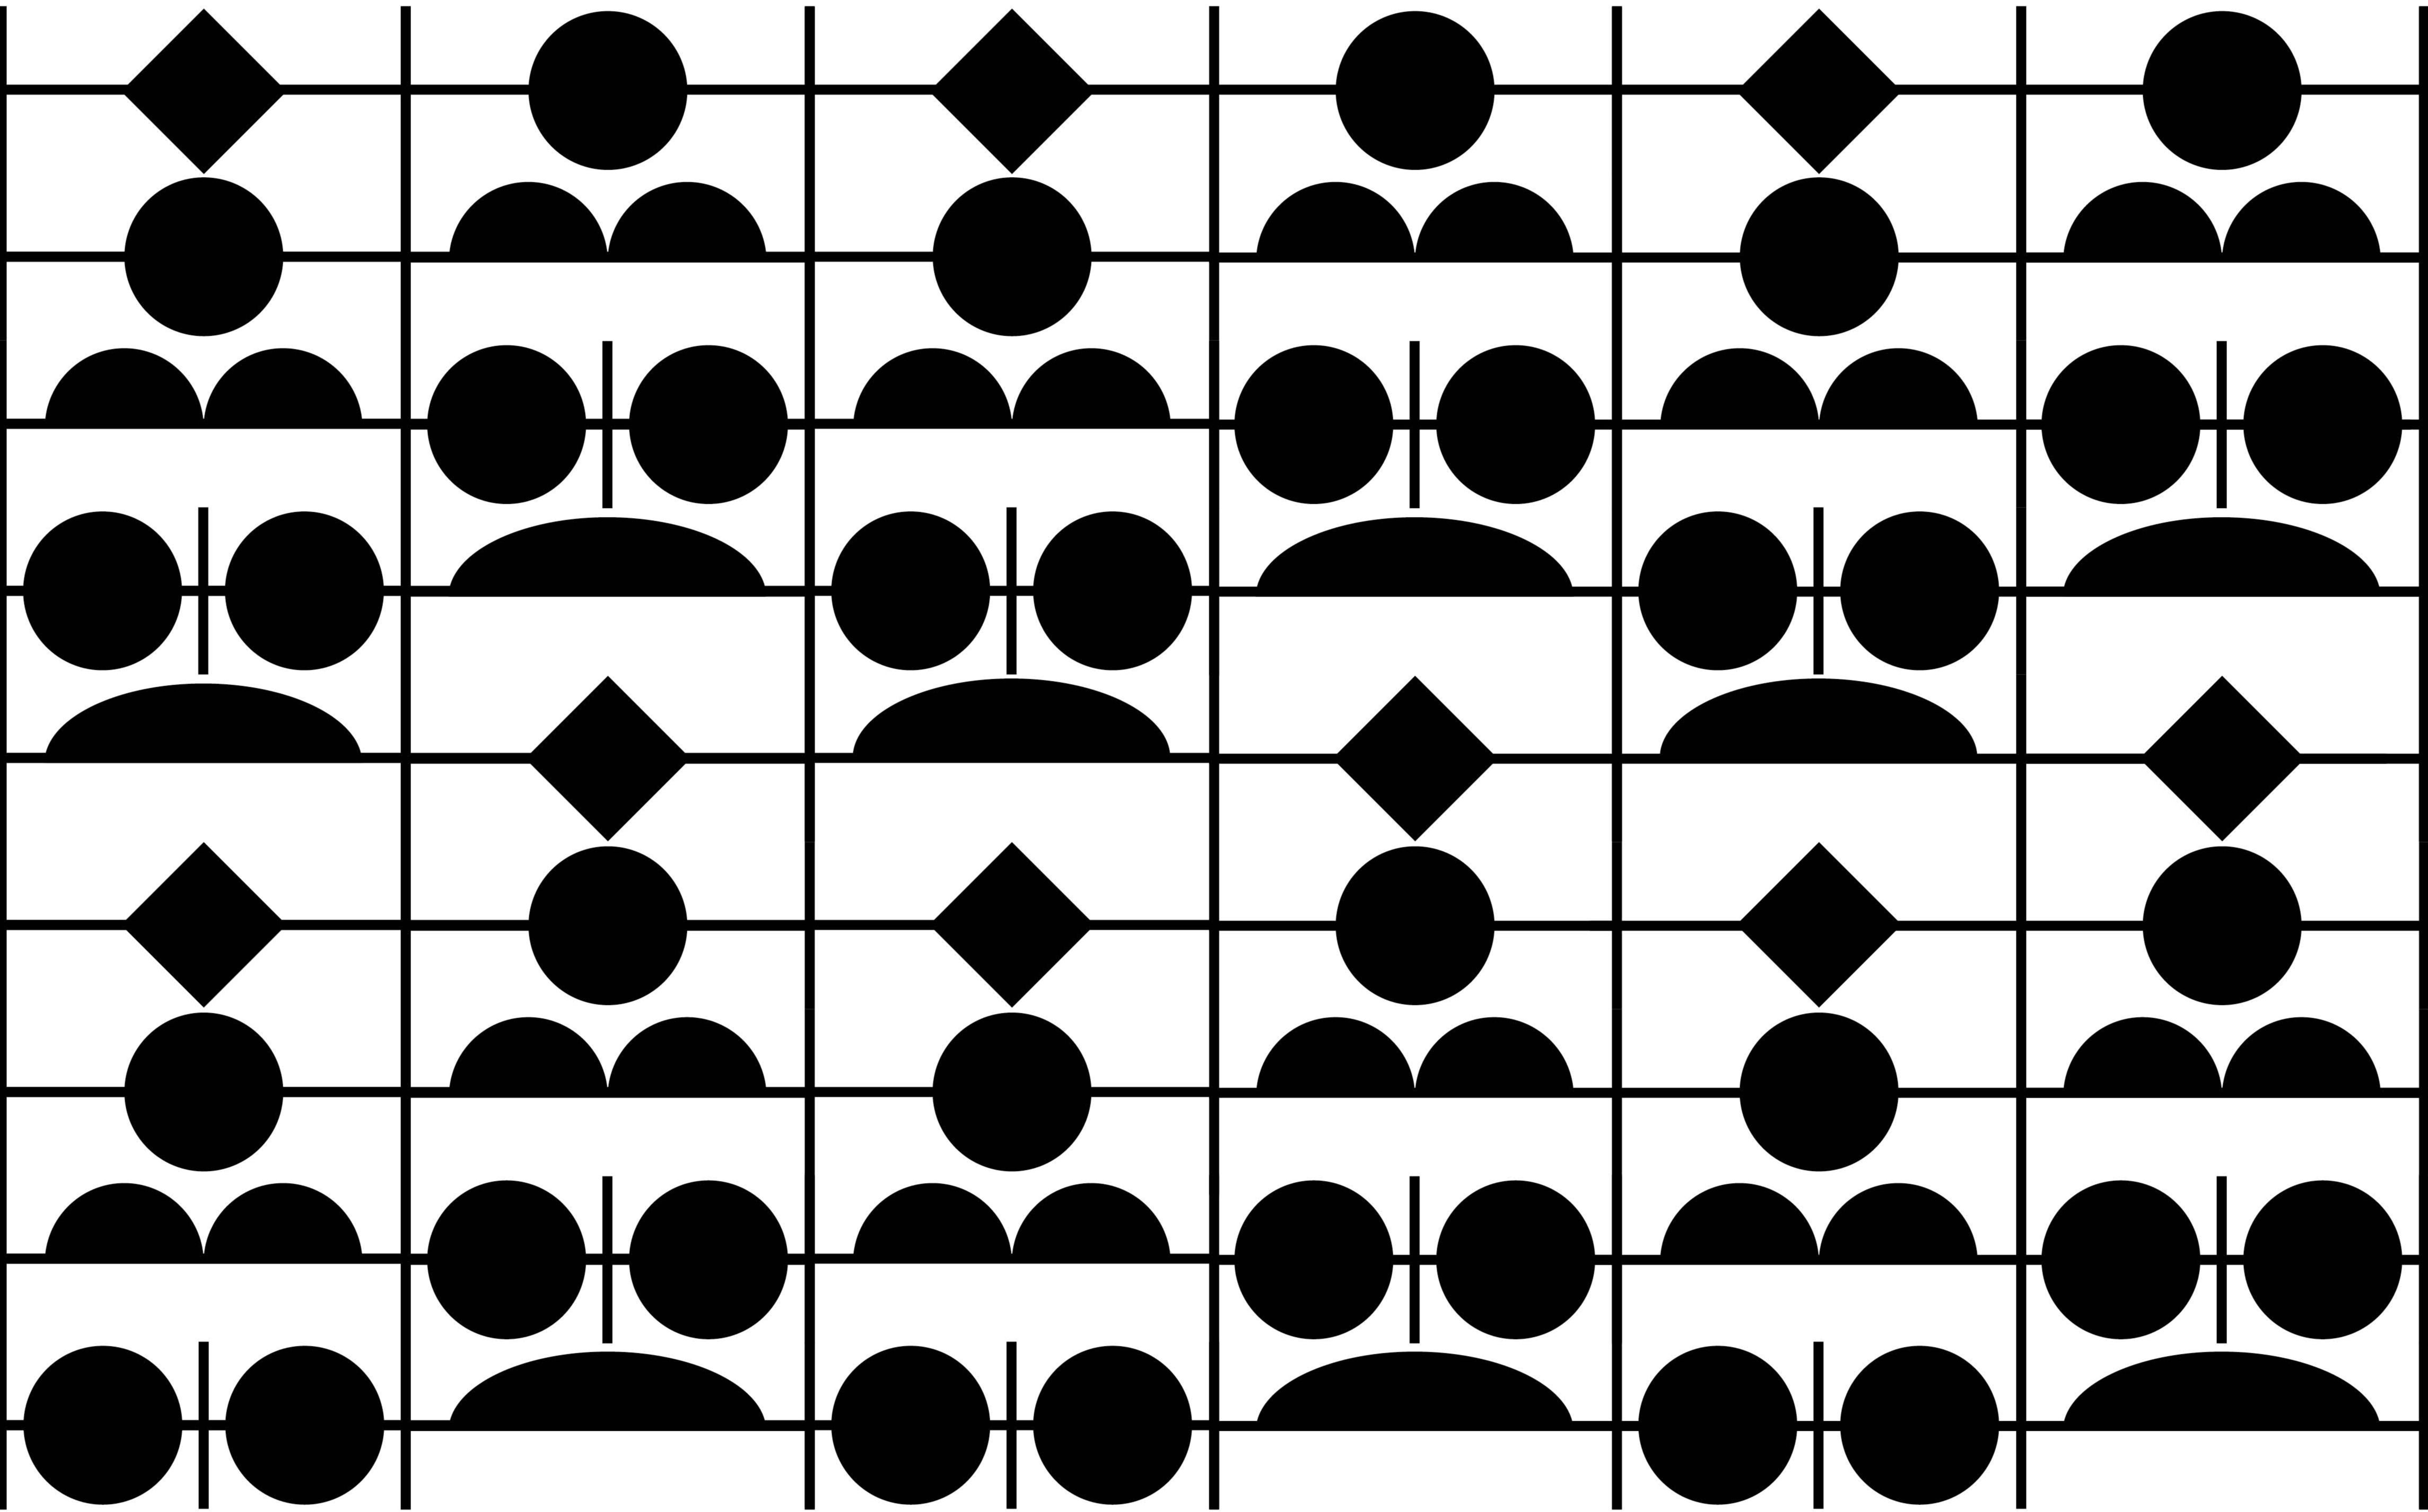 Черно-белая схема с прямоугольниками, кругами и ромбами